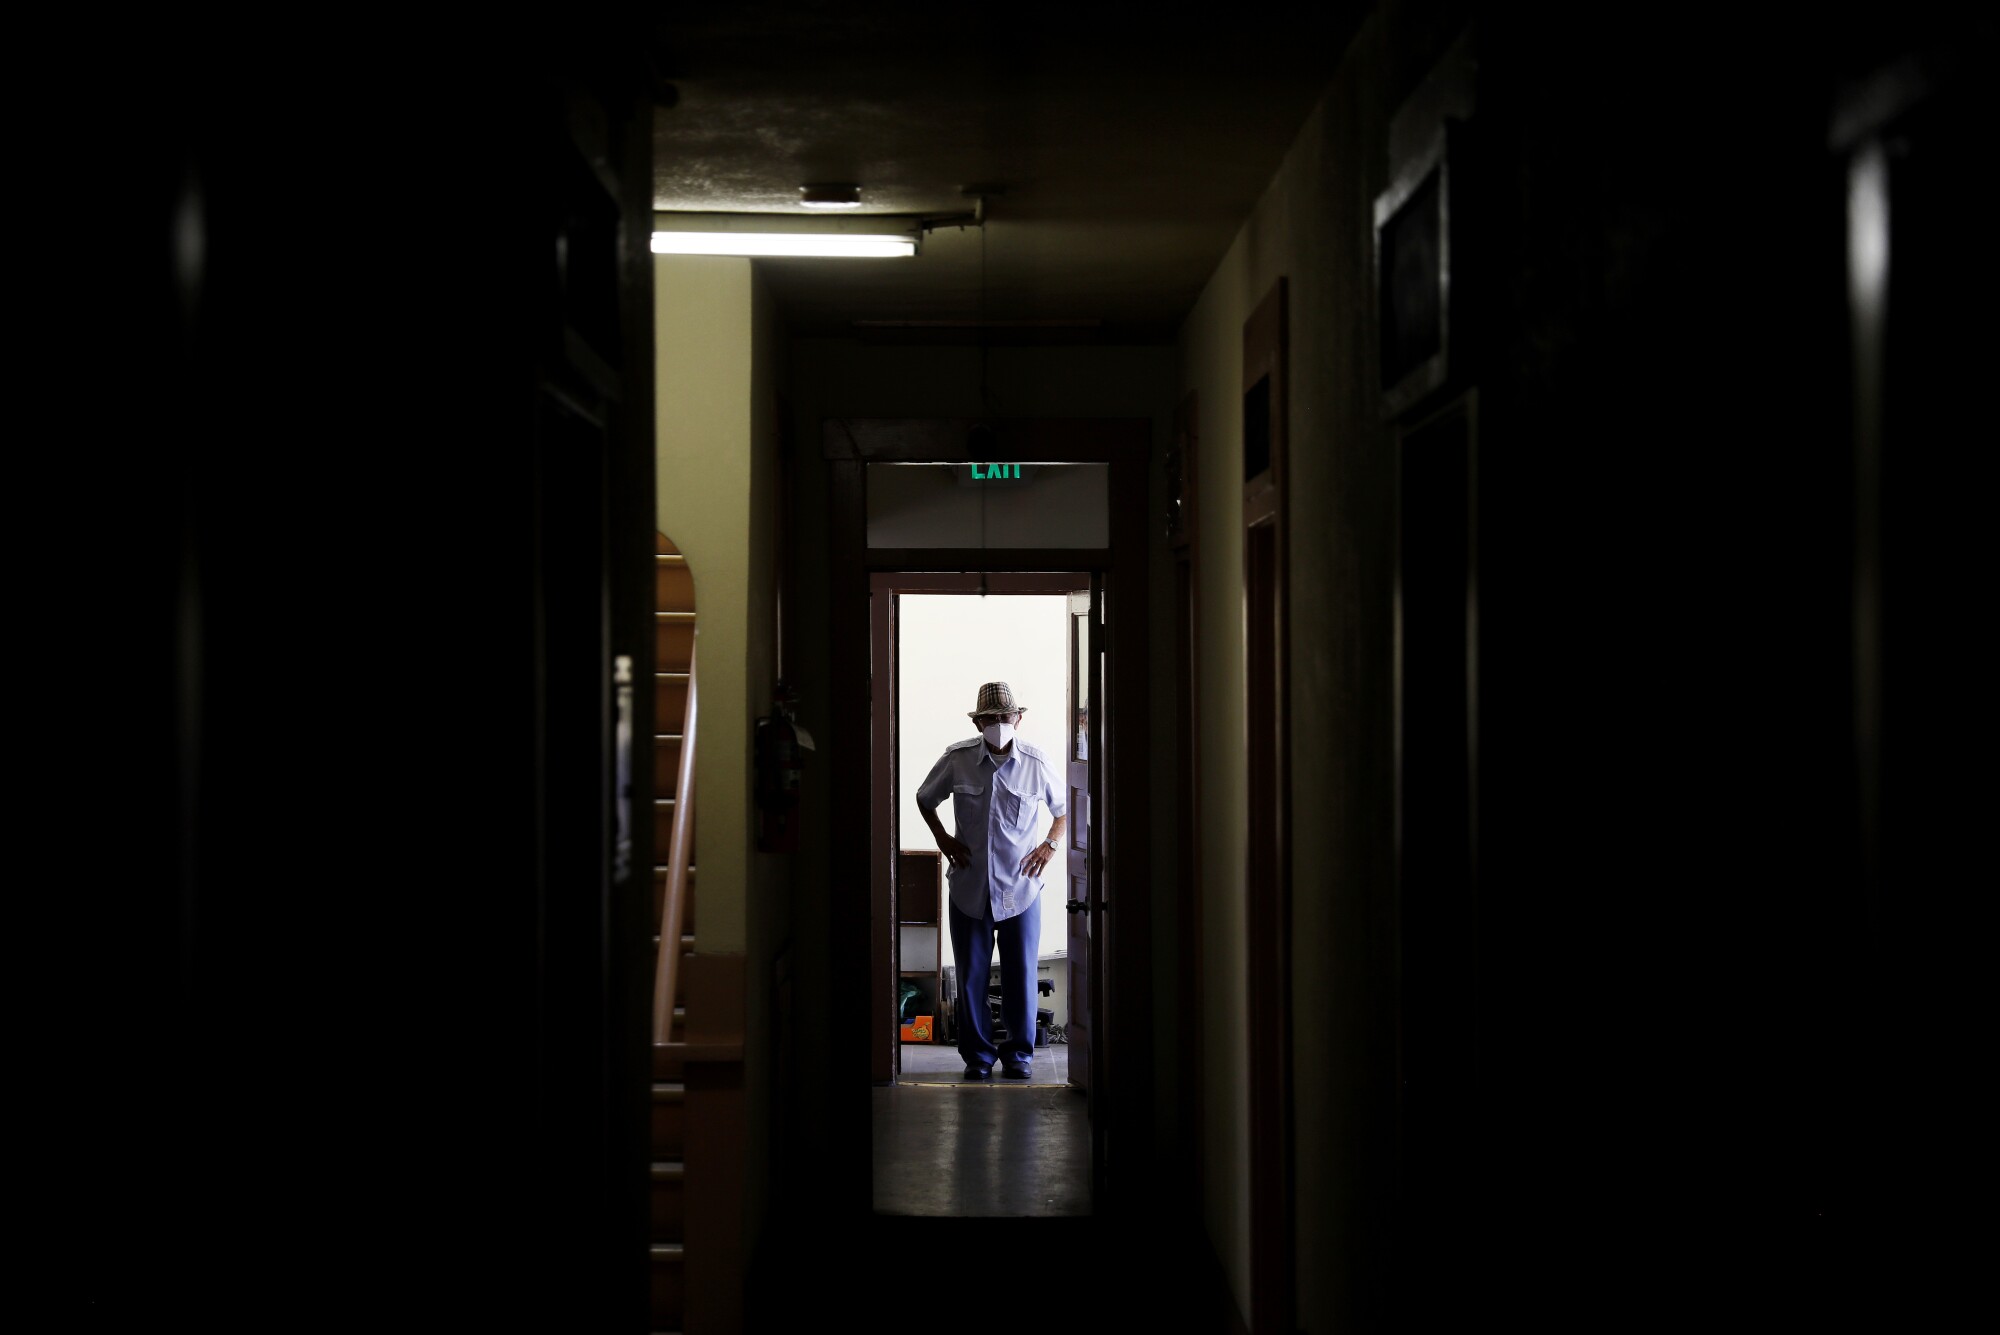 James Niimi stands in a doorway in a dark building 